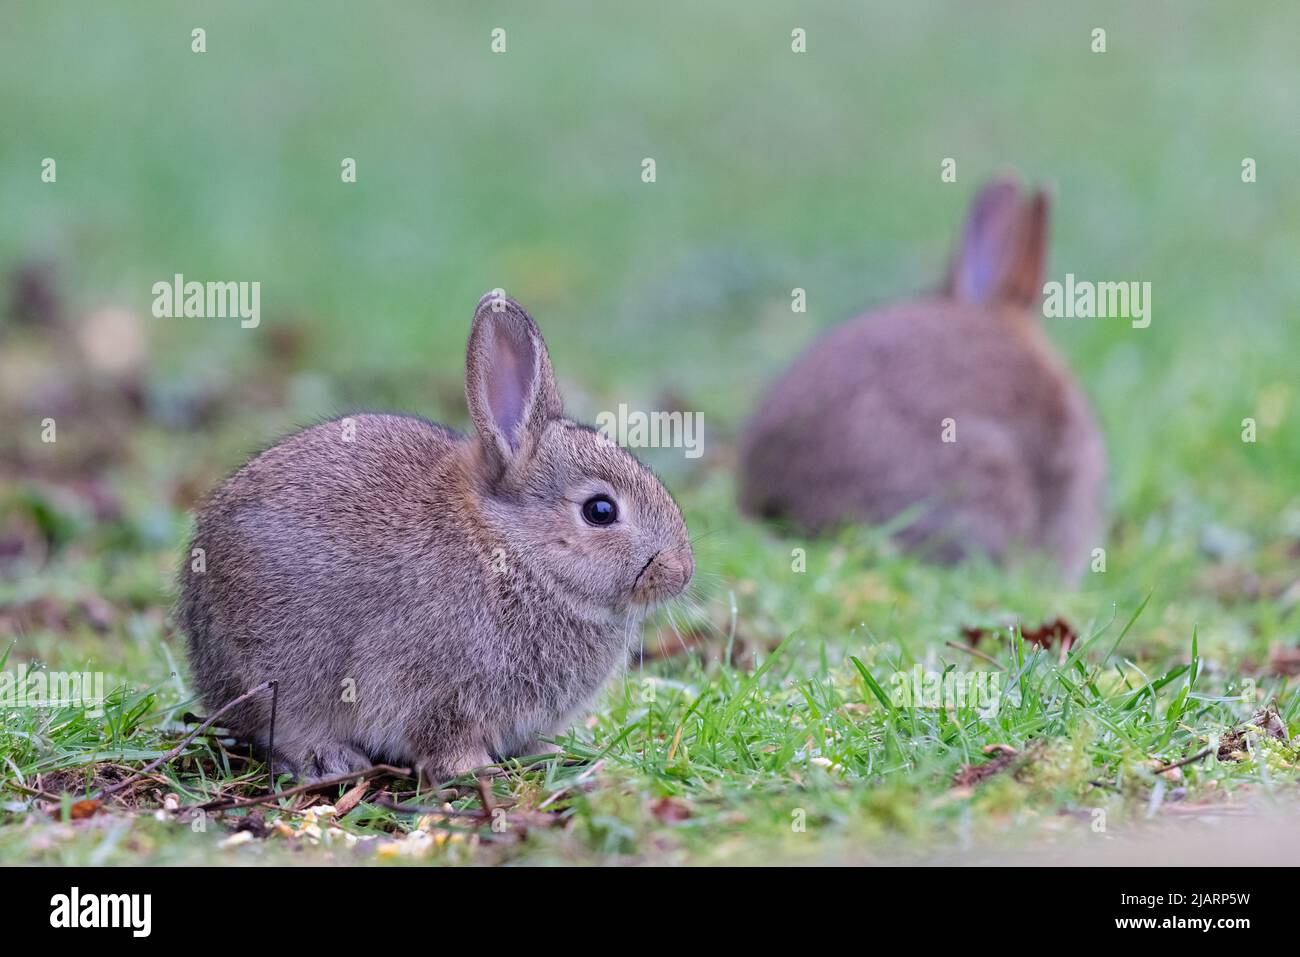 Jeunes lapins européens [ Oryctolagus cuniculus ] se nourrissant sur les prairies, Royaume-Uni Banque D'Images